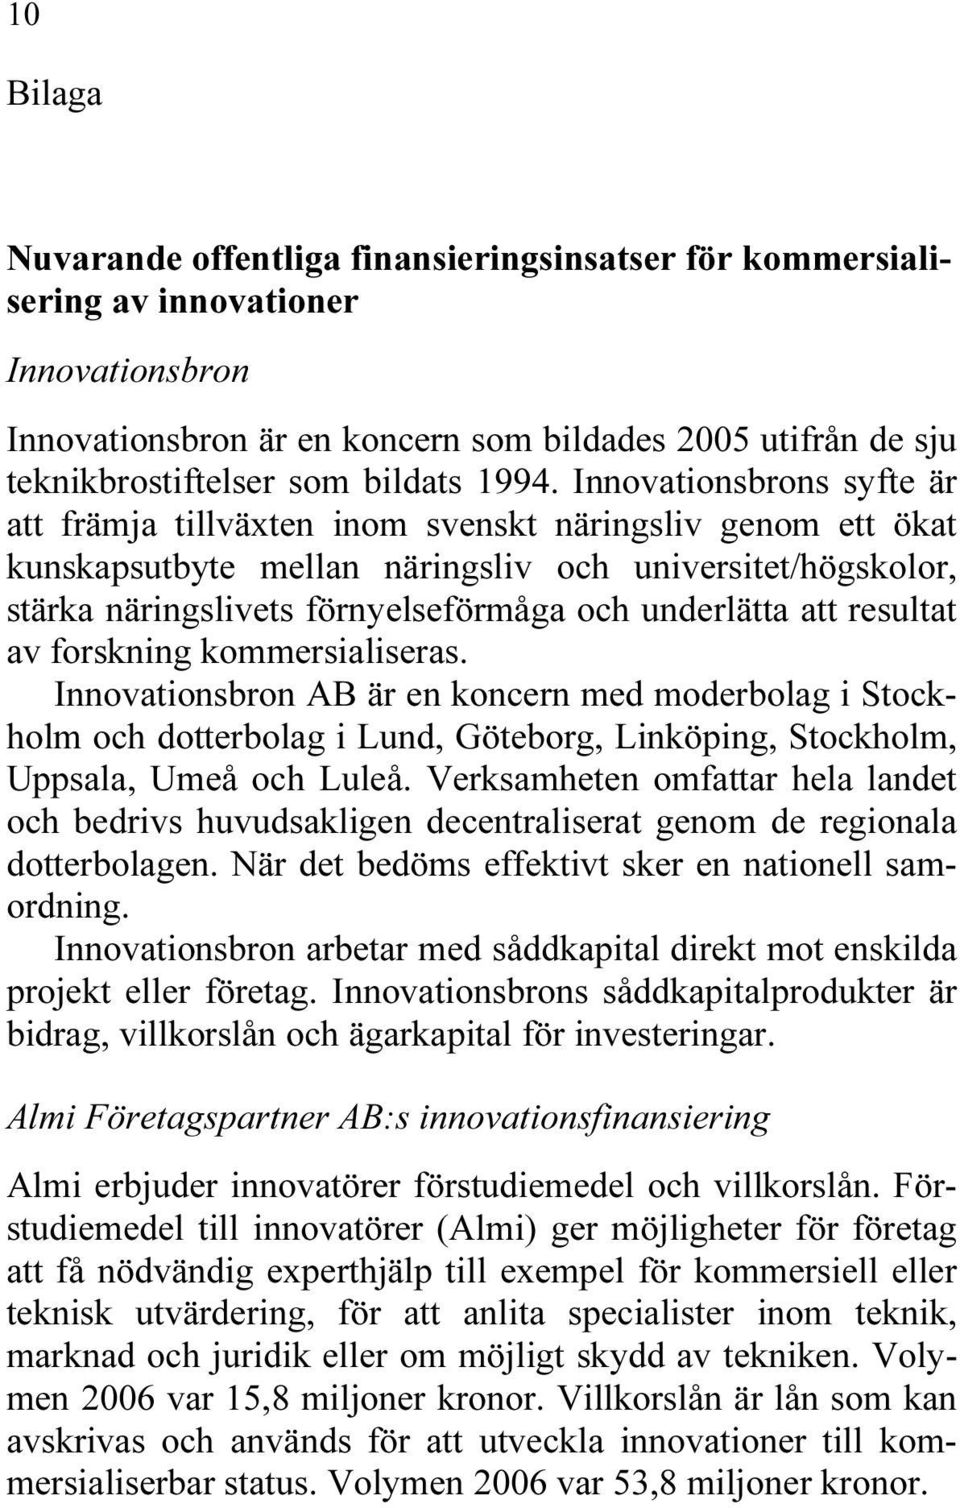 Innovationsbrons syfte är att främja tillväxten inom svenskt näringsliv genom ett ökat kunskapsutbyte mellan näringsliv och universitet/högskolor, stärka näringslivets förnyelseförmåga och underlätta